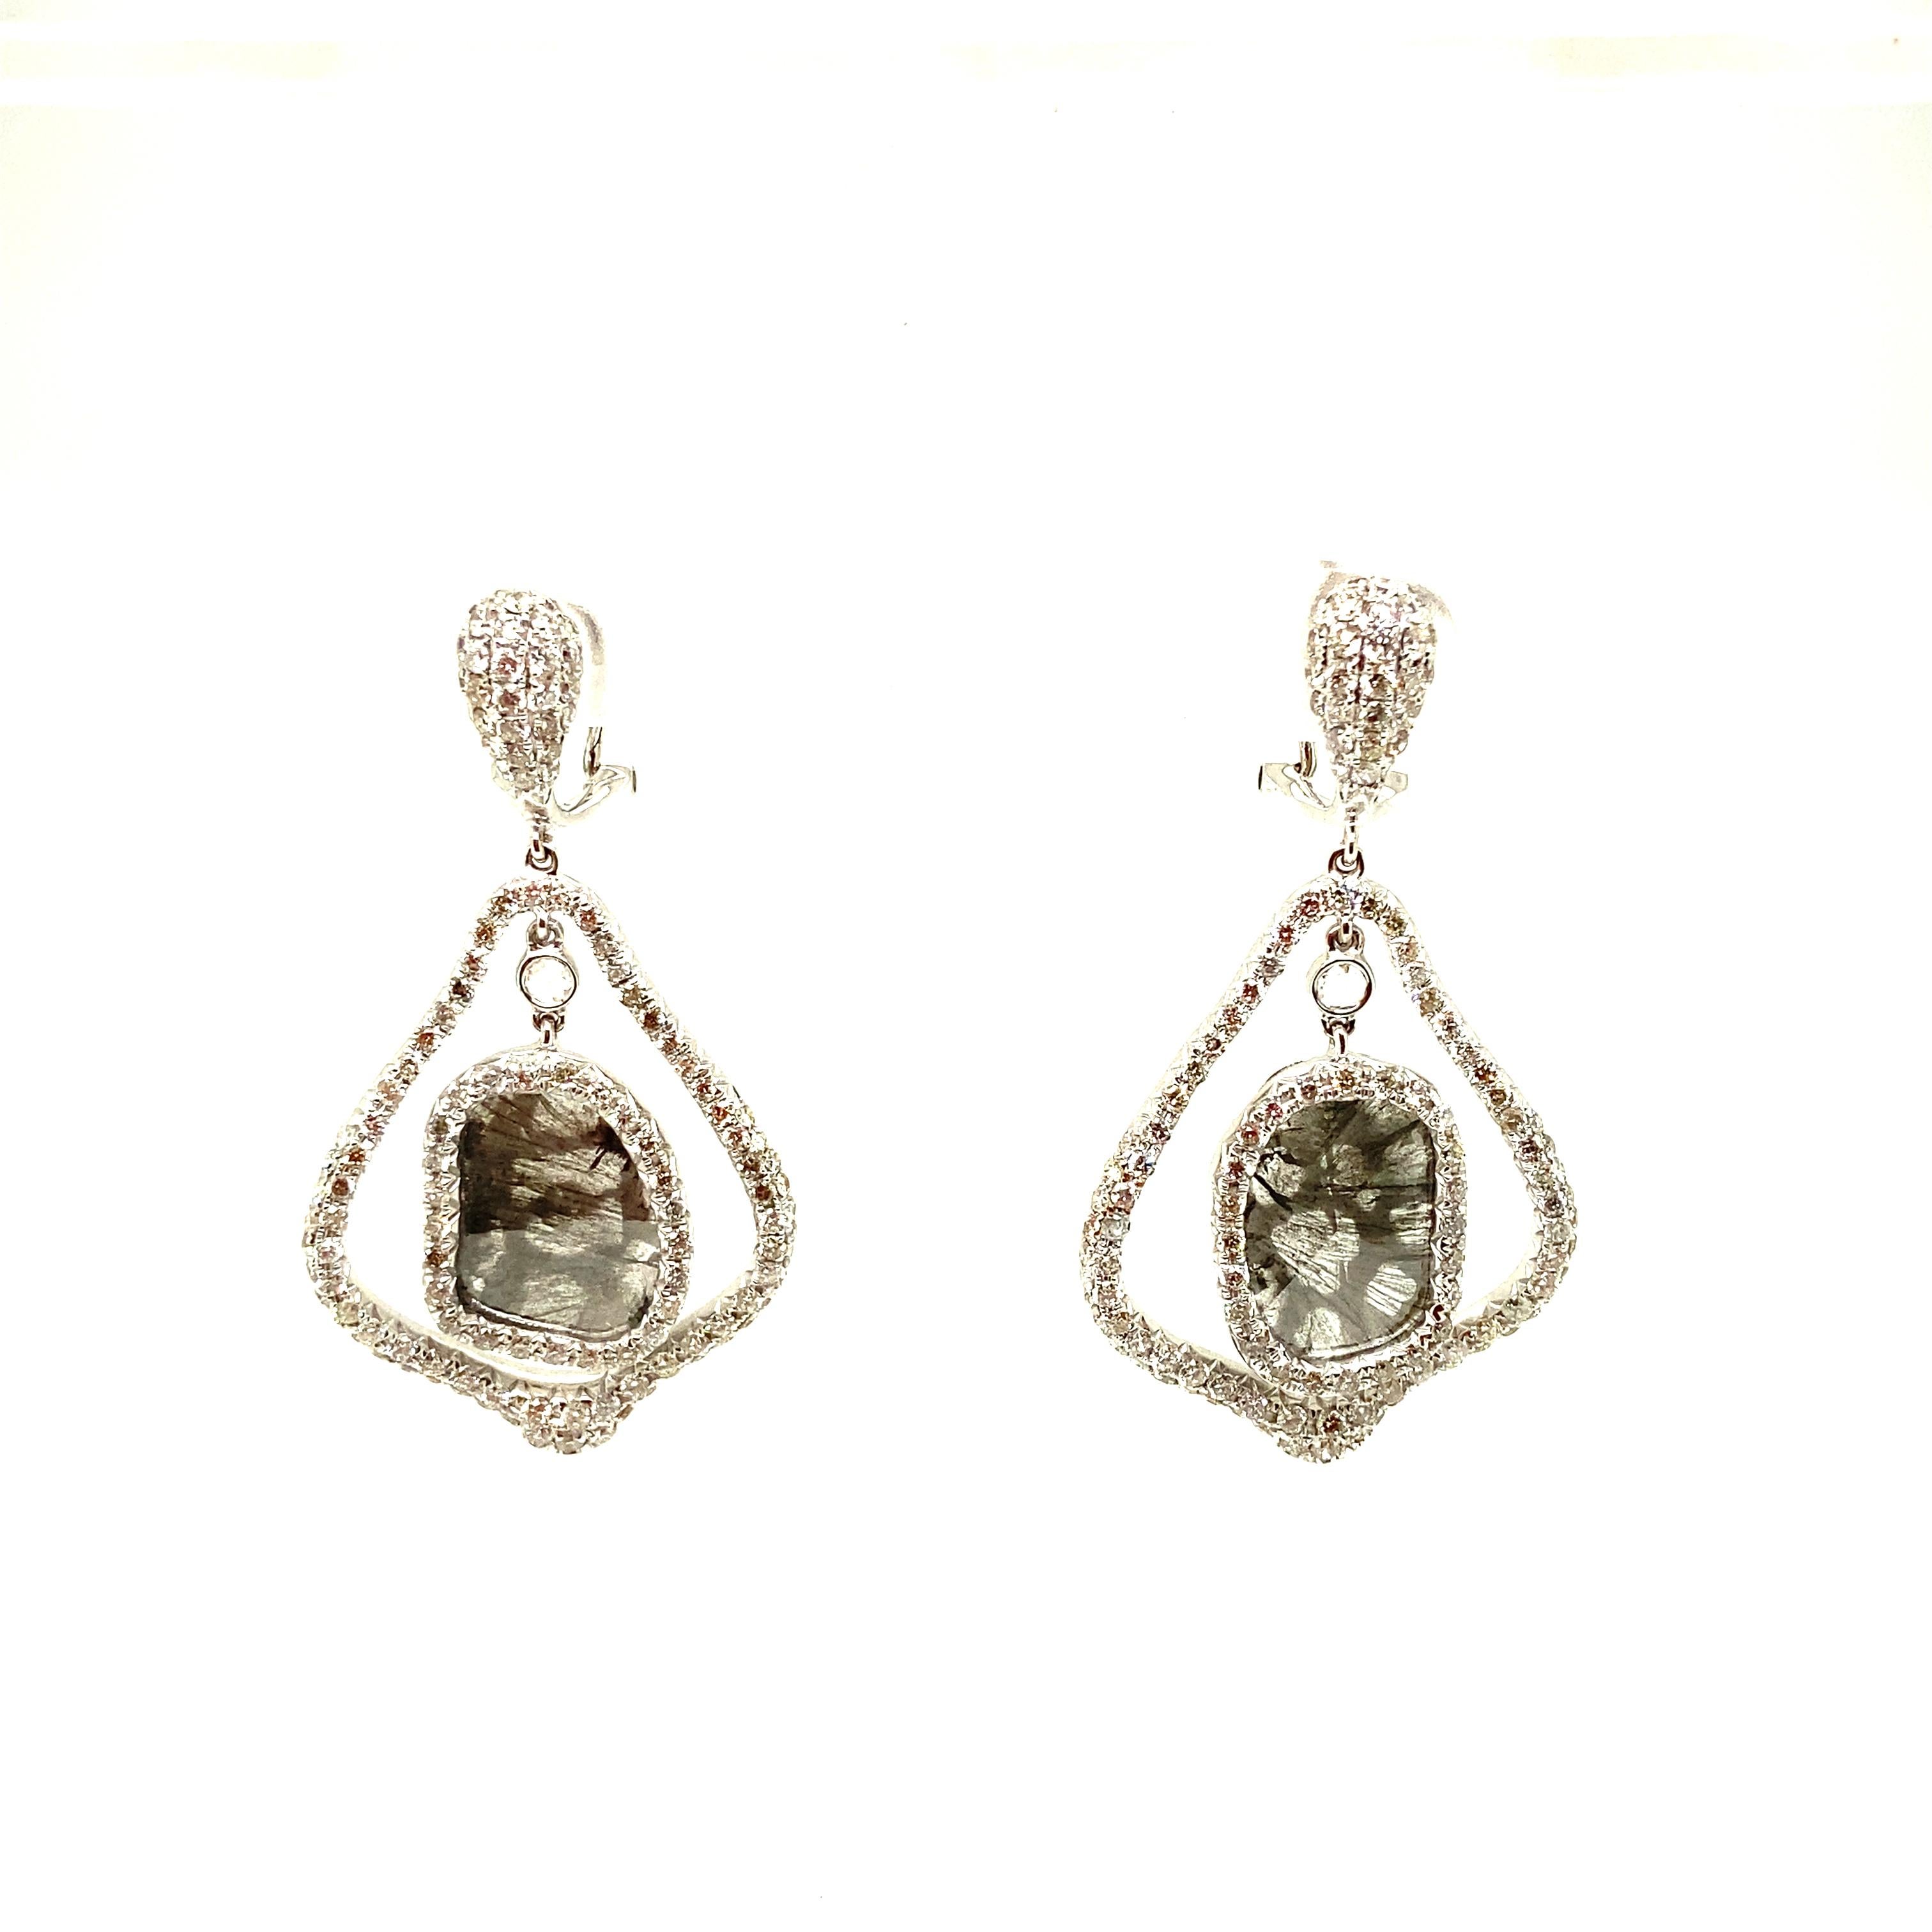 Natürlicher Fancy-Diamant und weißer Diamant Gelbgold-Ohrringe:

Dieses einzigartige Paar Ohrringe besteht aus zwei natürlichen, farbigen Diamanten mit einem Gewicht von 3,54 Karat, die von weißen, runden Brillanten mit einem Gewicht von 2,50 Karat